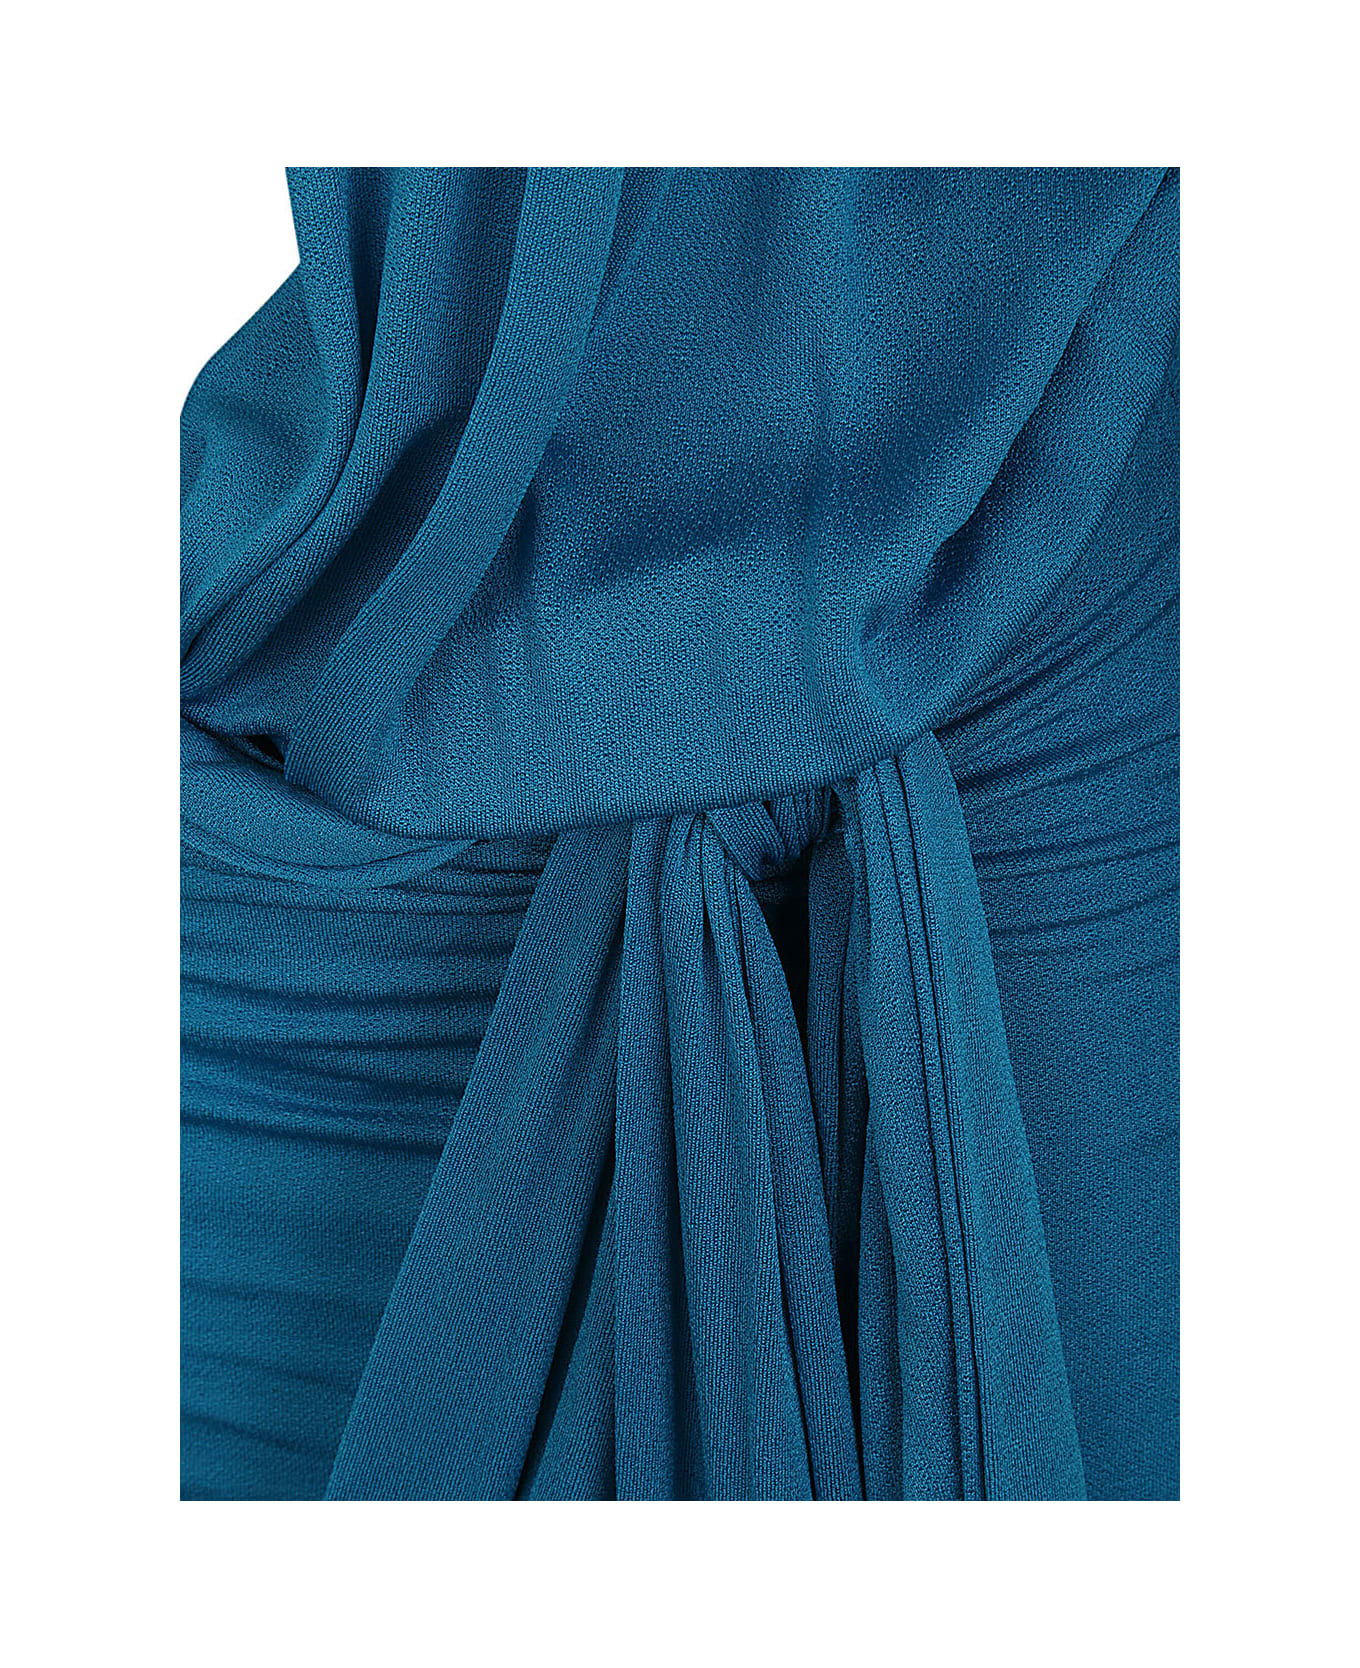 Blumarine 2a416a Mini Dress - Jewel Blue